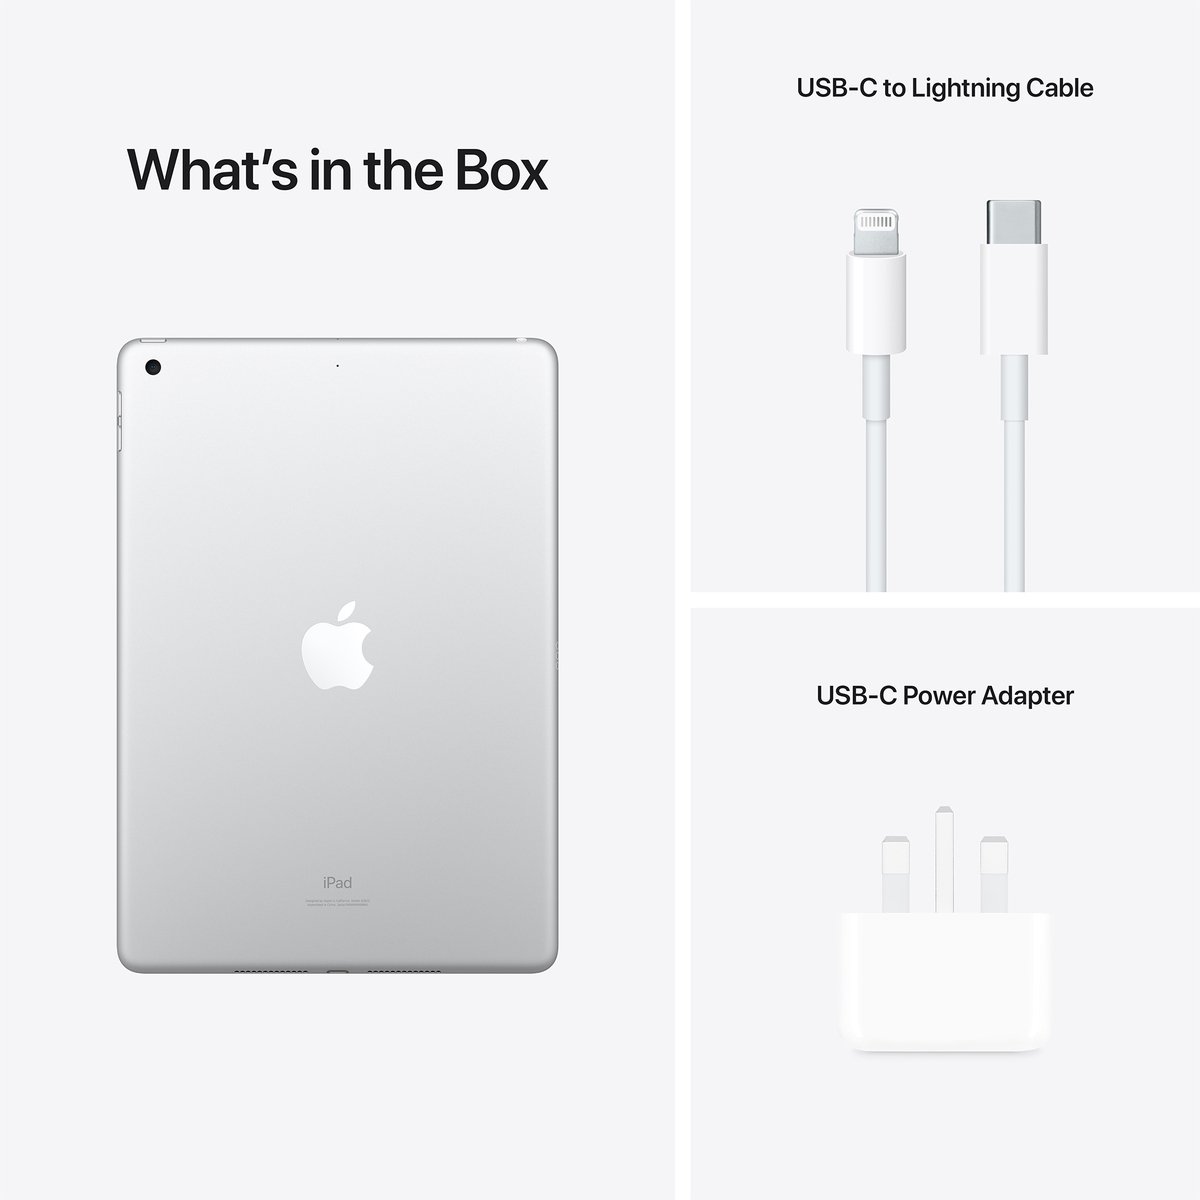 Apple iPad 2021 (9th Generation) 10.2-inch, Wi-Fi, 64GB - Silver